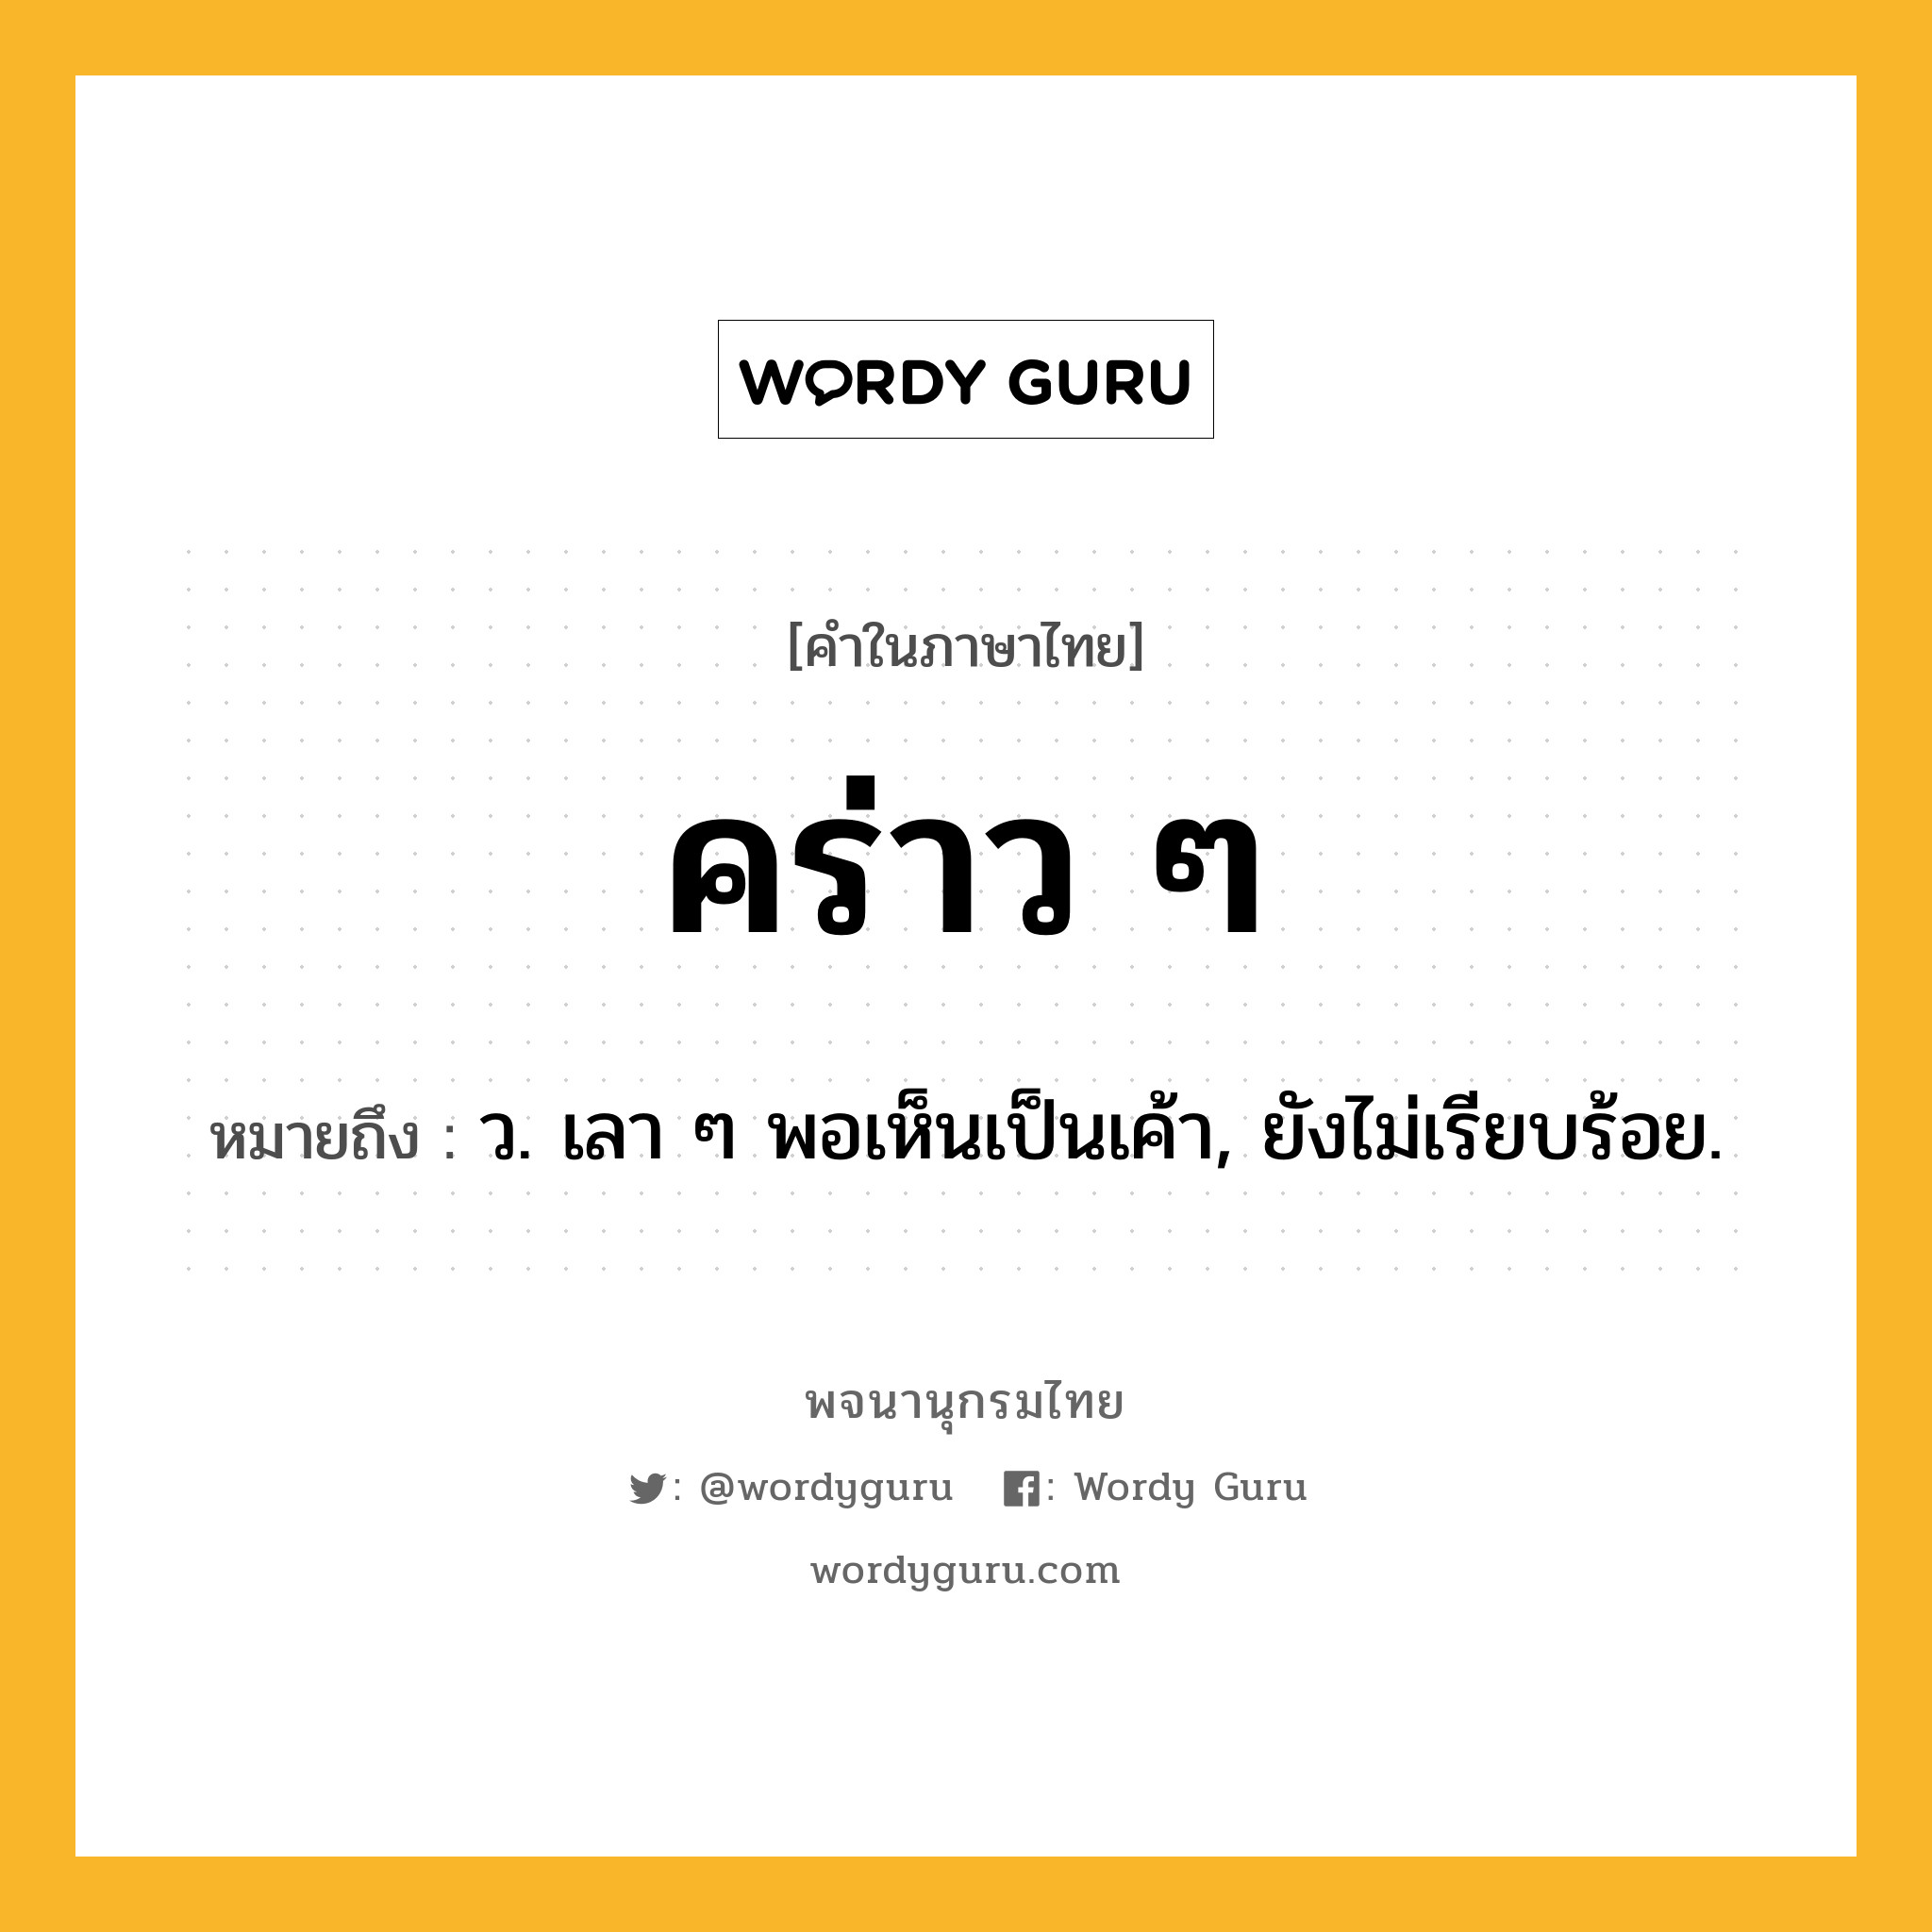 คร่าว ๆ ความหมาย หมายถึงอะไร?, คำในภาษาไทย คร่าว ๆ หมายถึง ว. เลา ๆ พอเห็นเป็นเค้า, ยังไม่เรียบร้อย.